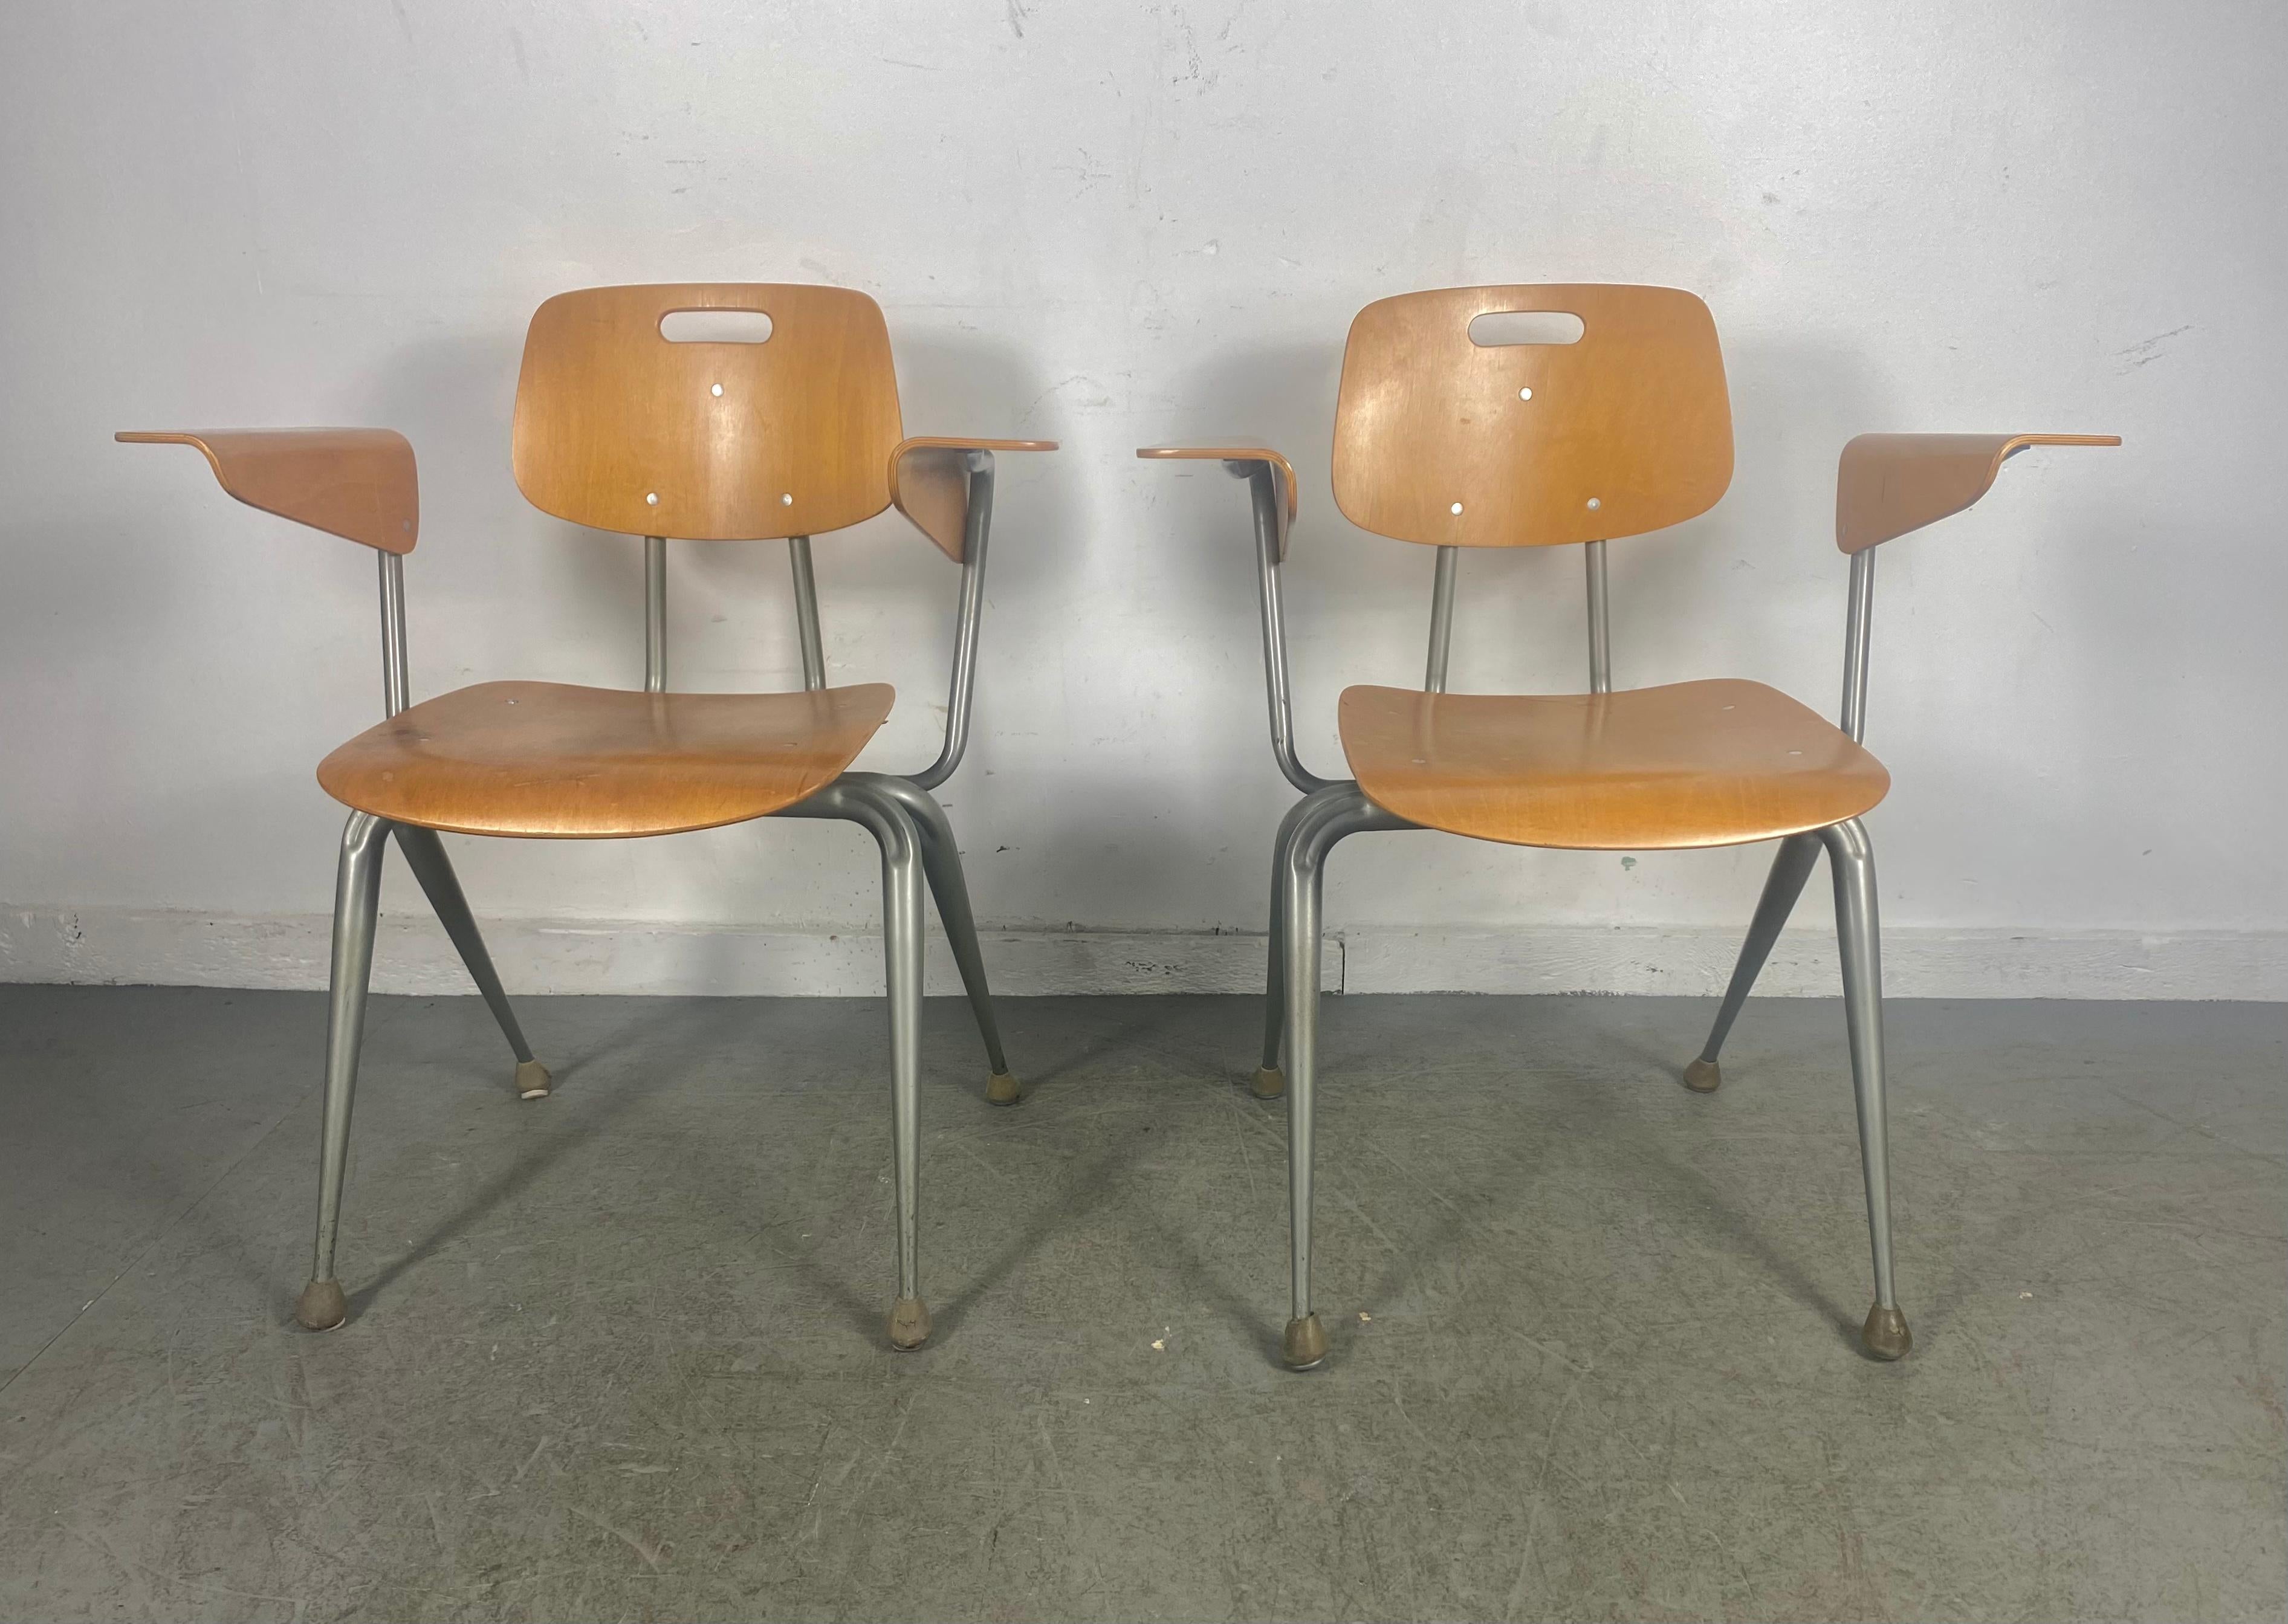 Moderne Sessel aus geformtem Ahornsperrholz und Stahlrohr von Brunswick aus den 1950er Jahren. Dies ist ein wunderbares Beispiel dafür, wie modernes Design aus der Mitte des Jahrhunderts seinen Weg in die amerikanischen Institutionen der